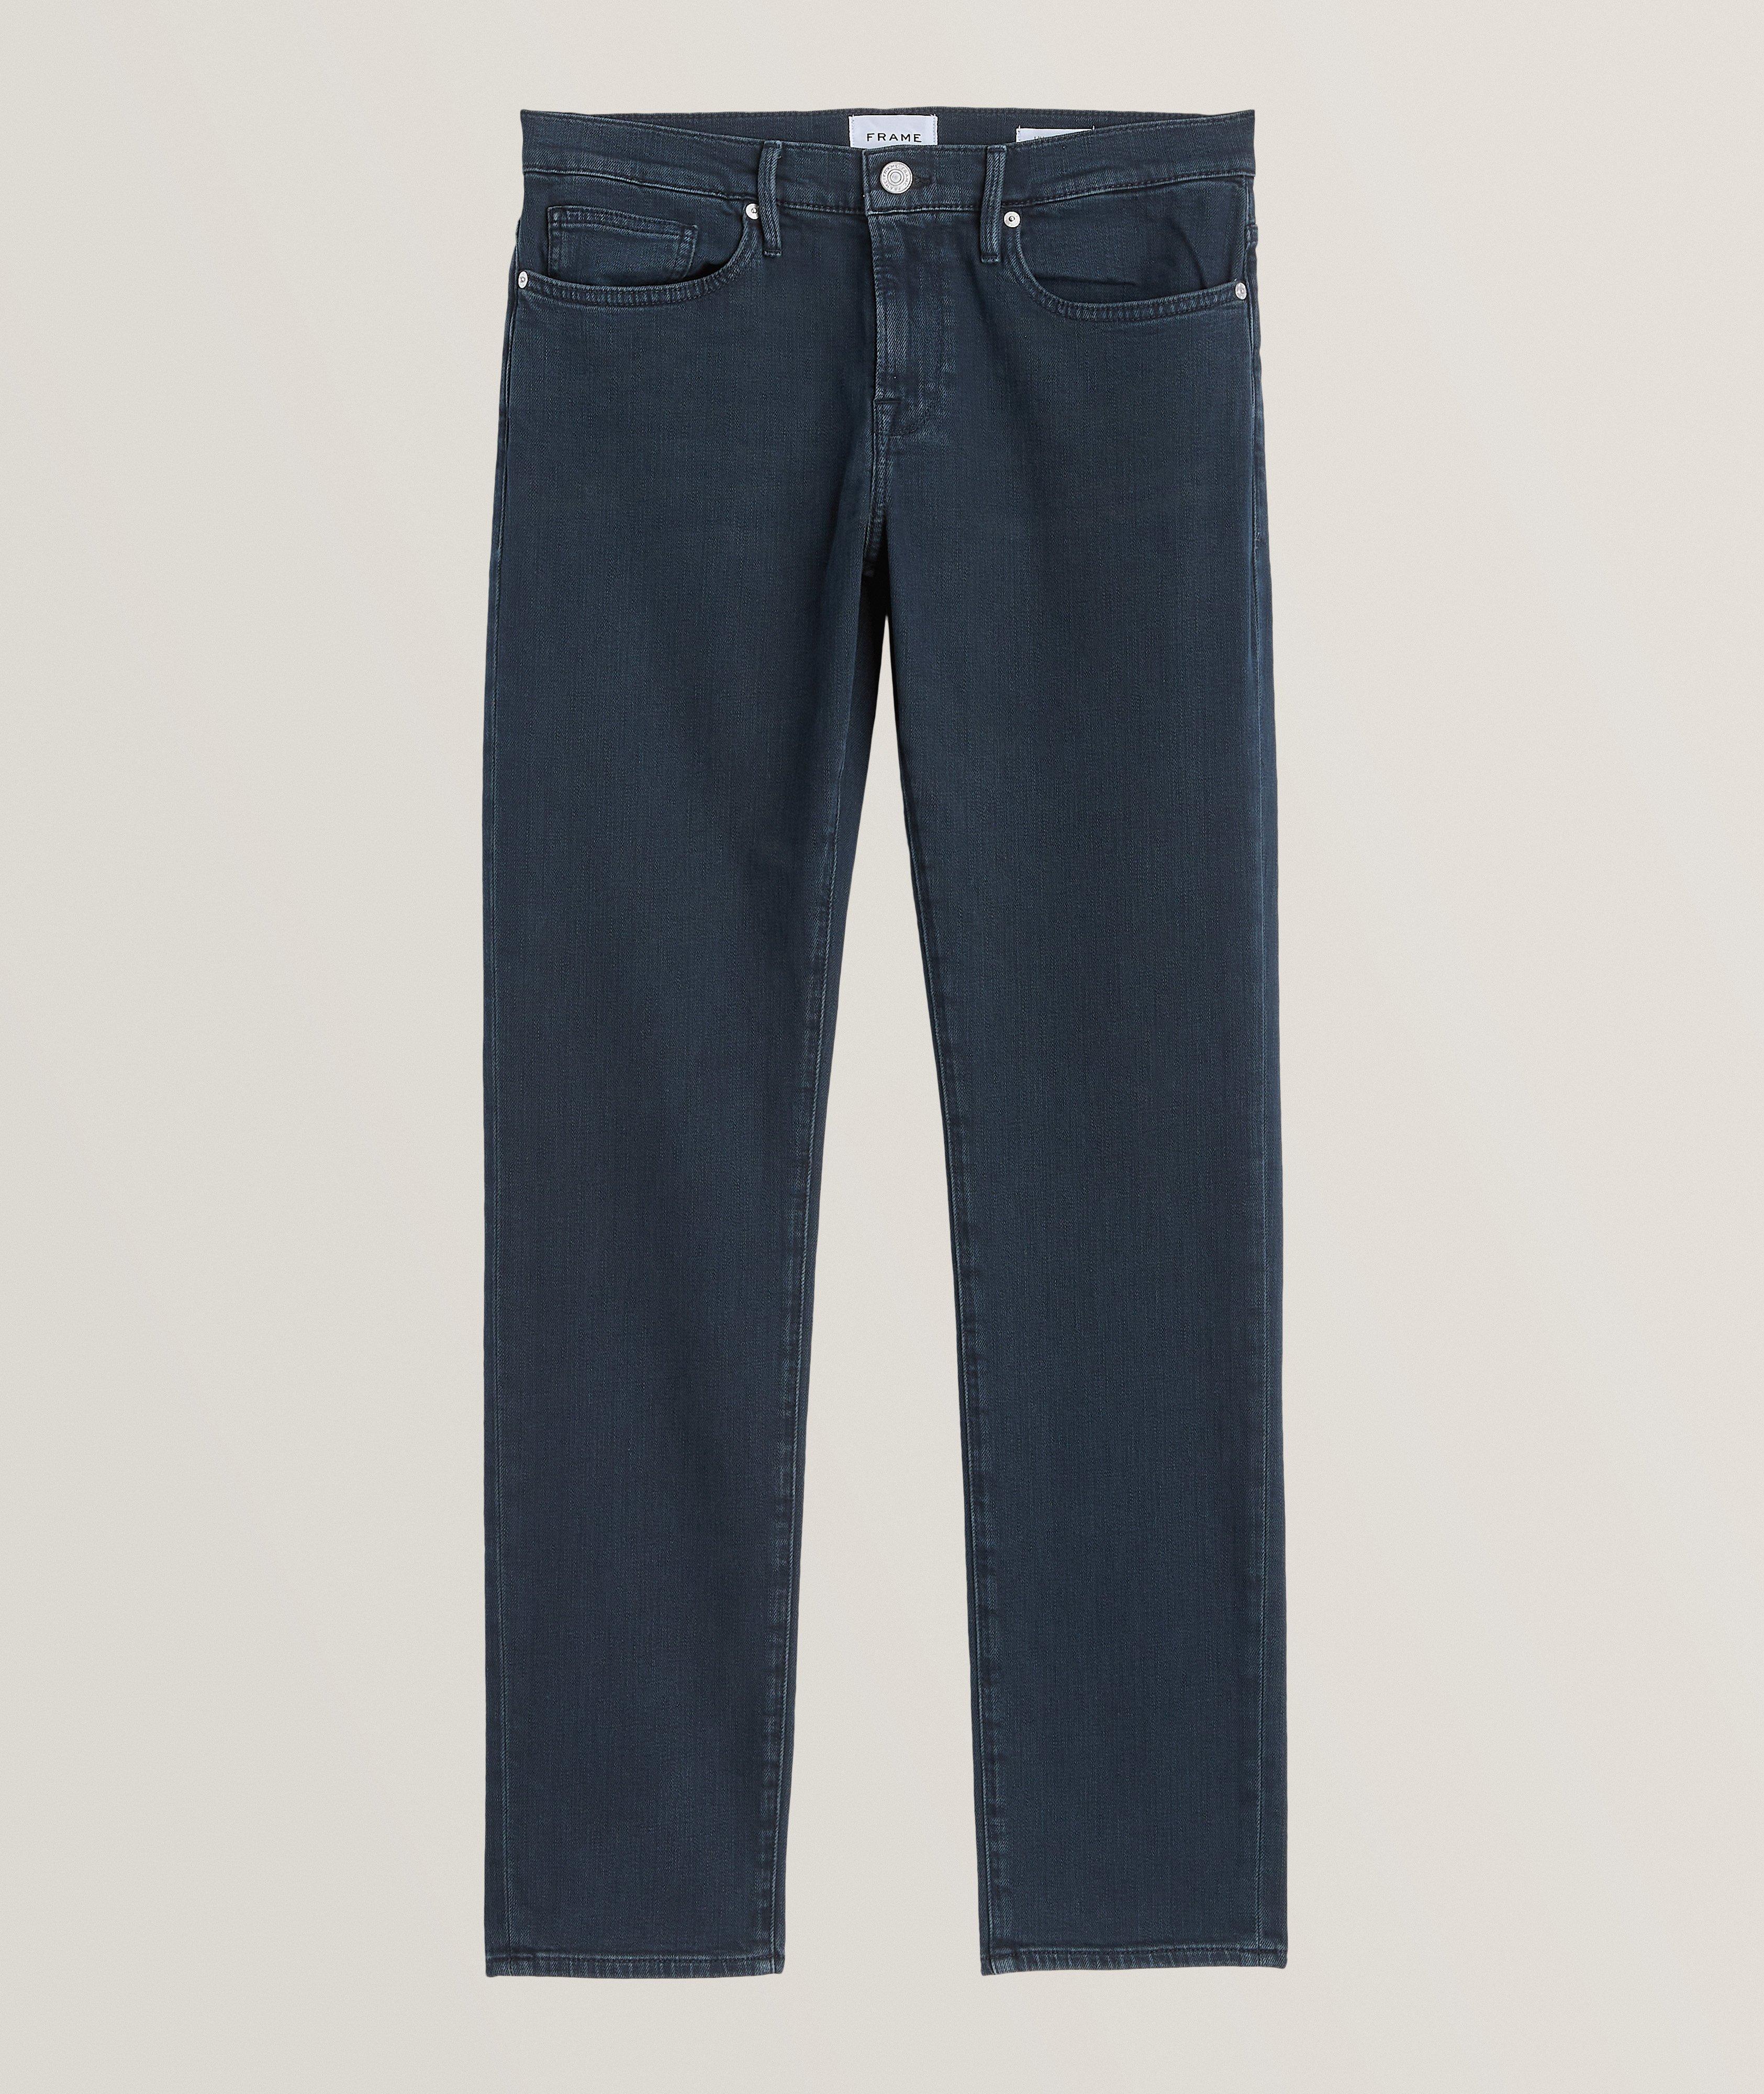 L'Homme Slim-Fit Stretch-Cotton Jeans image 0